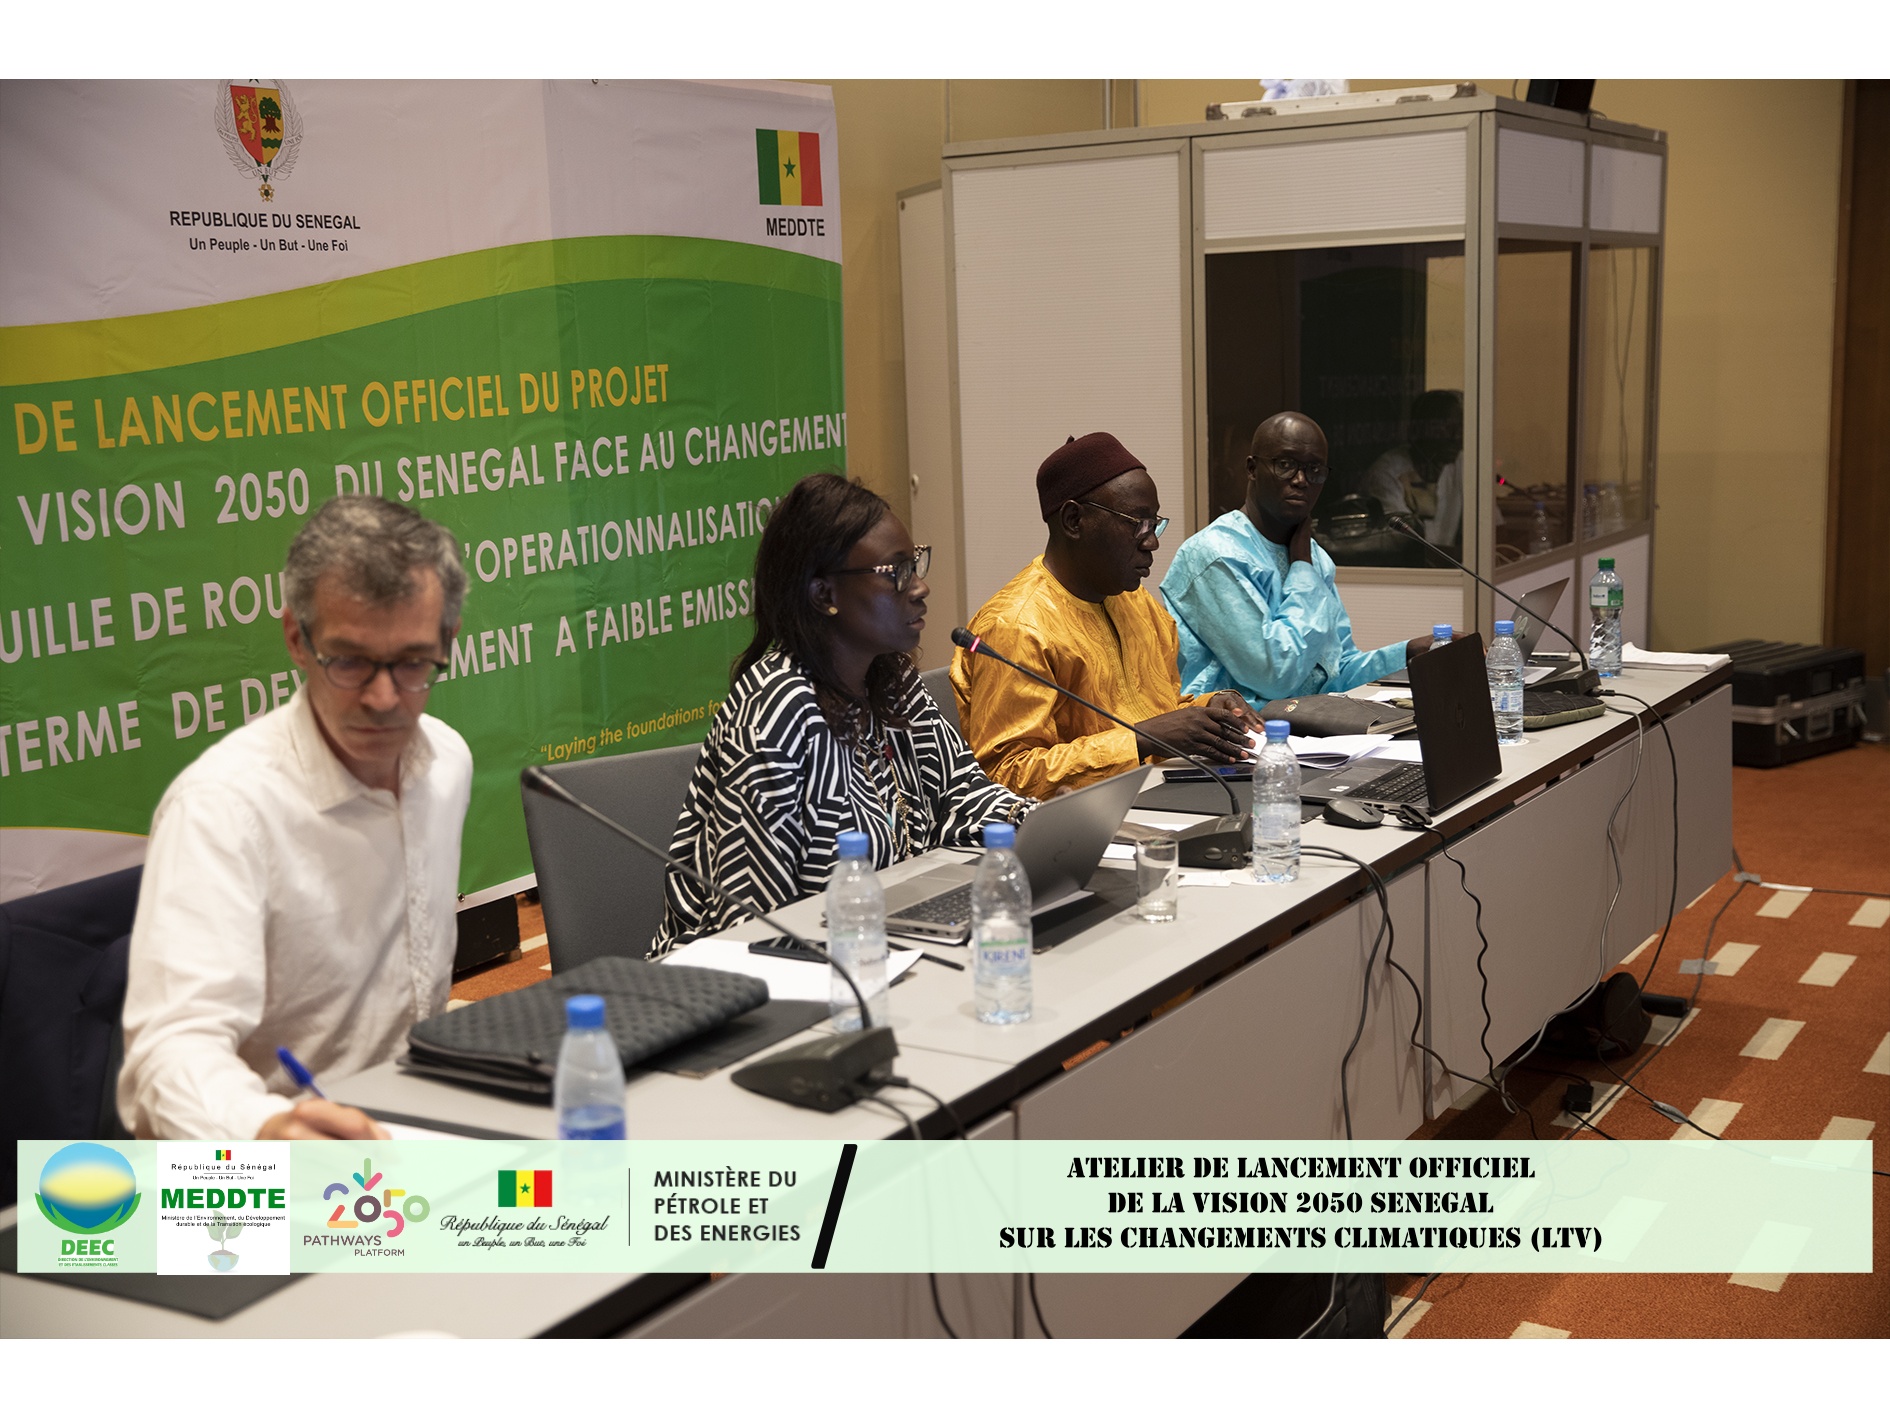 Atelier de lancement officiel de la Vision 2050 du Sénégal (LTV) sobre en carbone et résiliente aux changements climatiques.